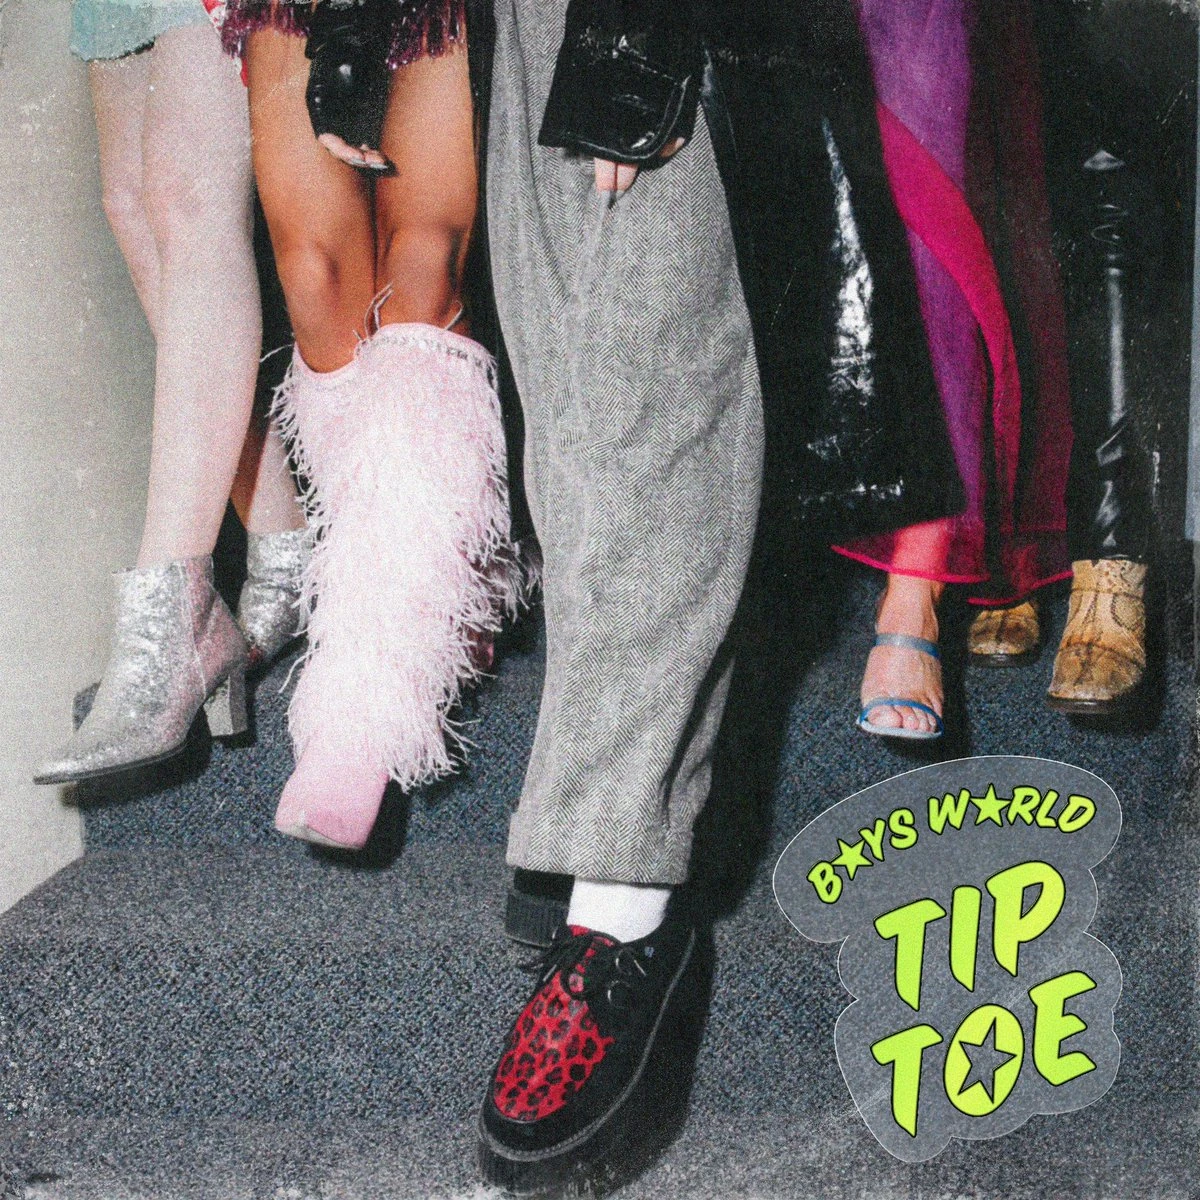 Boys World Tiptoe cover artwork